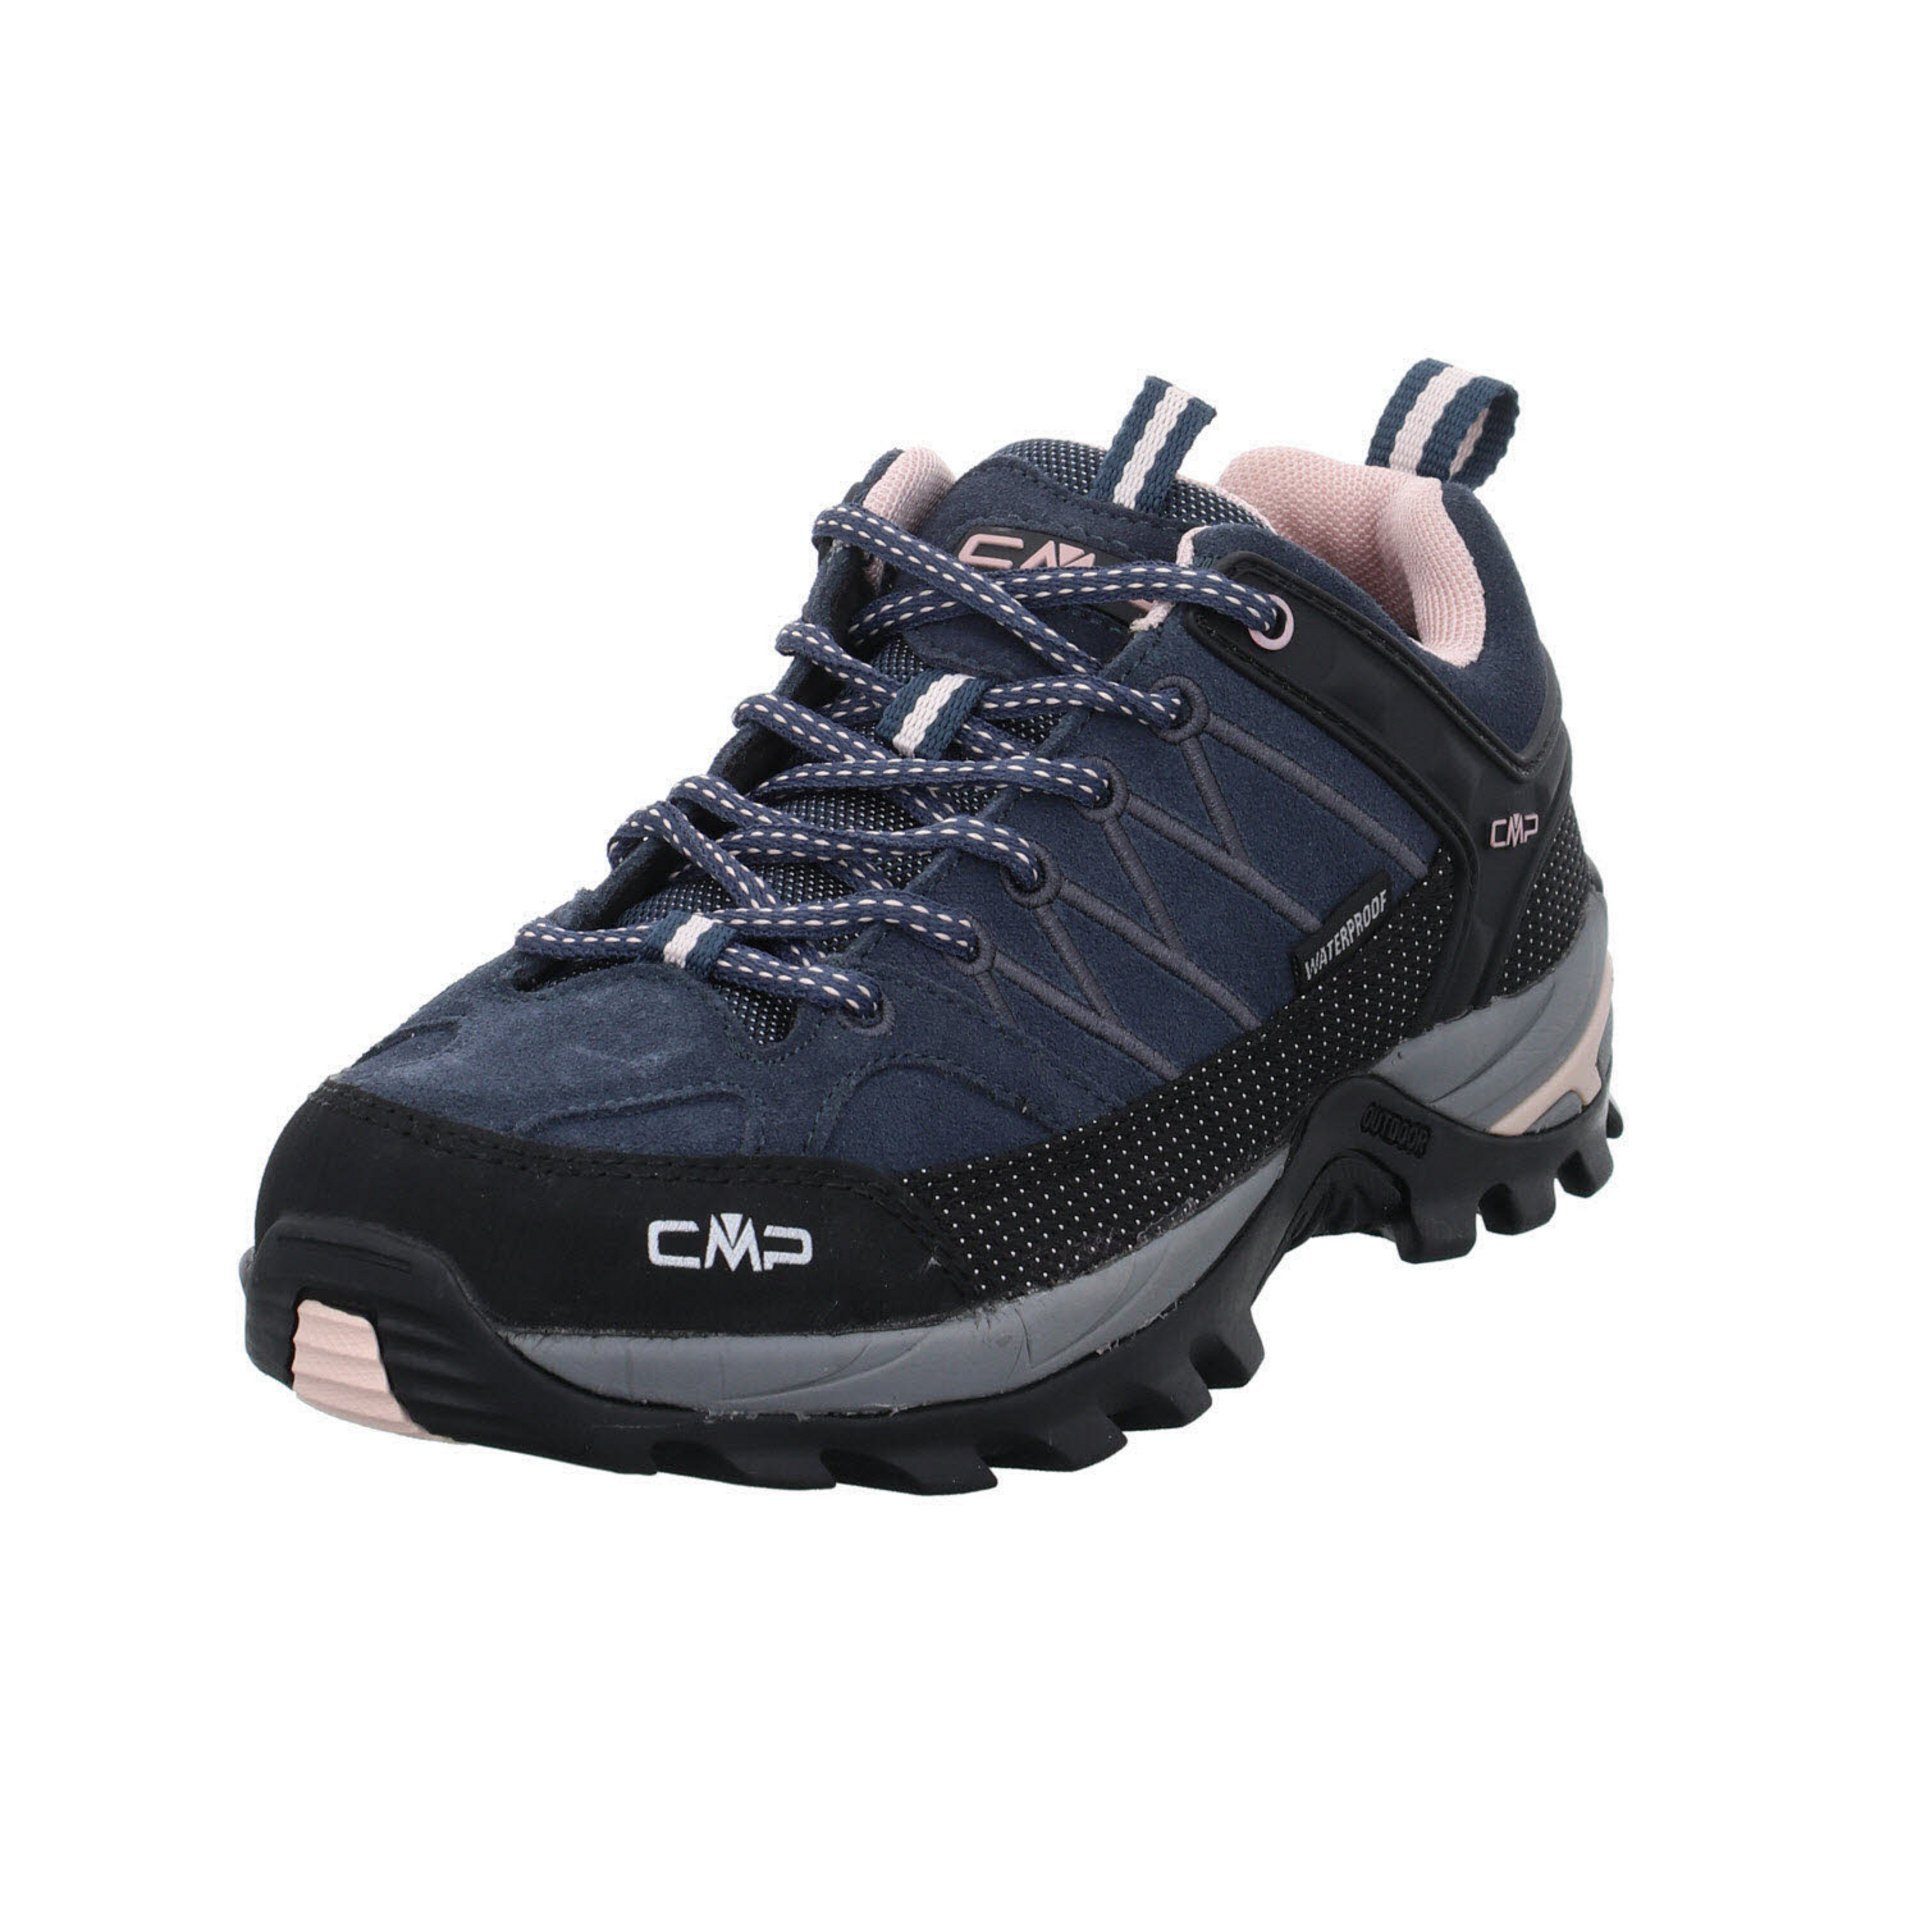 CMP Damen asphalt-antracite-rose Outdoor Leder-/Textilkombination Outdoorschuh Riegel Schuhe Low Outdoorschuh